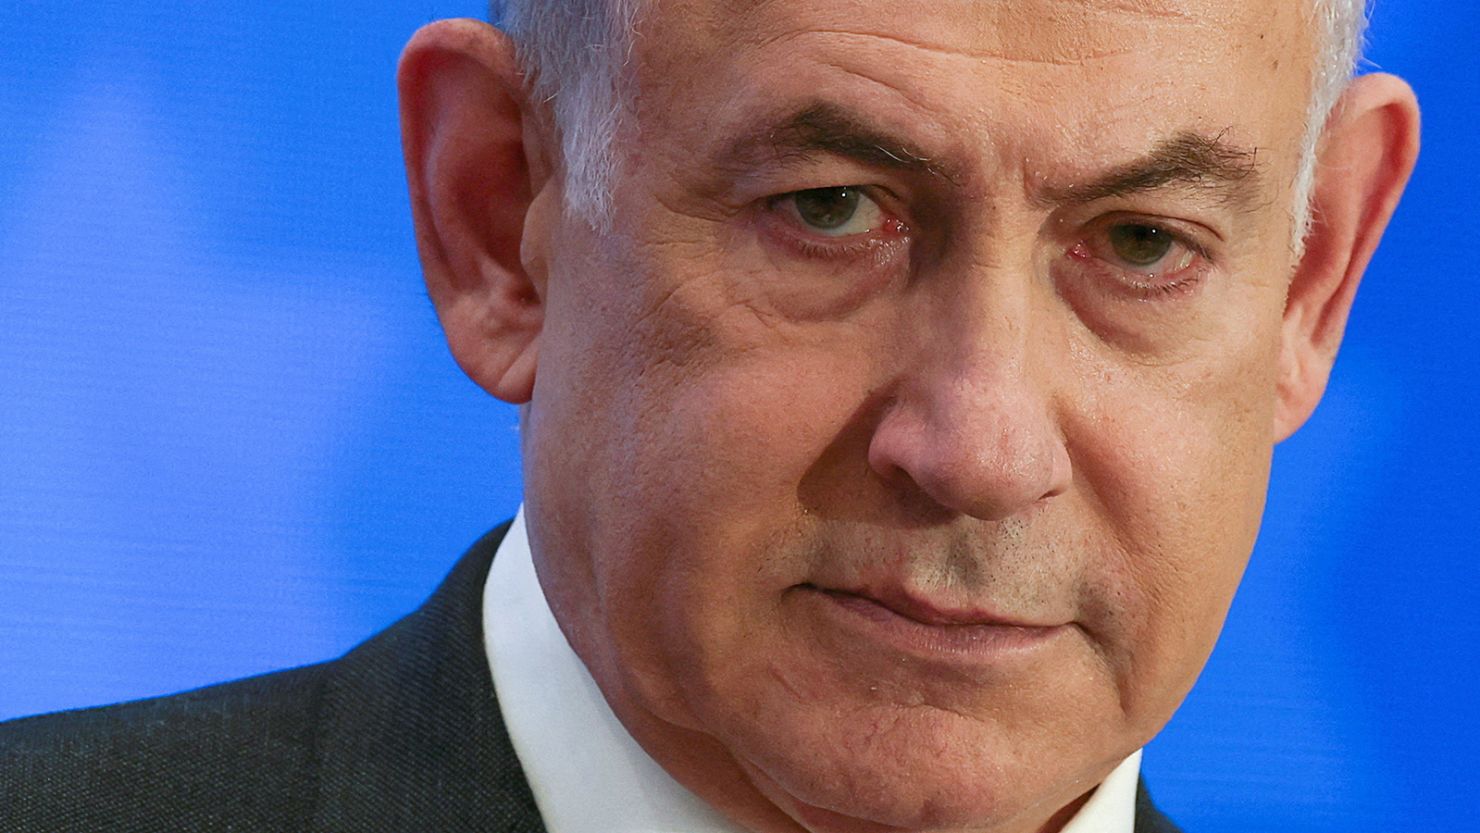 Netanyahu: "Sona qədər dırnaqlarımızla döyüşəcəyik" - VIDEO